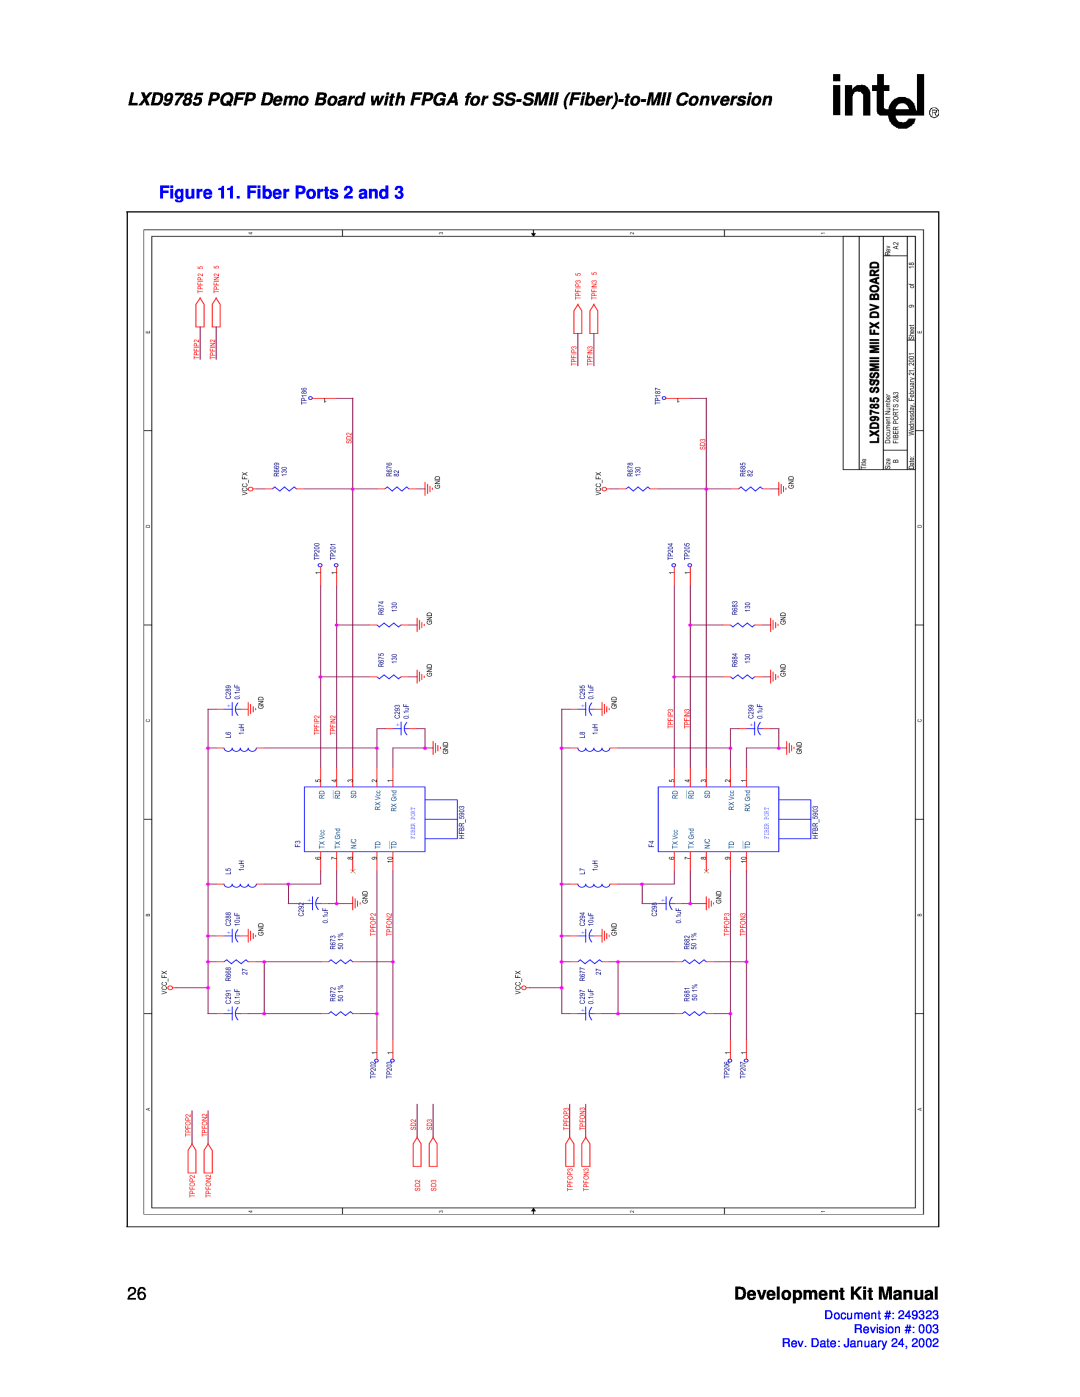 Intel 249323-003 manual FPGA for SS-SMII Fiber-to, Kit Manual, Conversion, Date January, Development, Fiber Port 